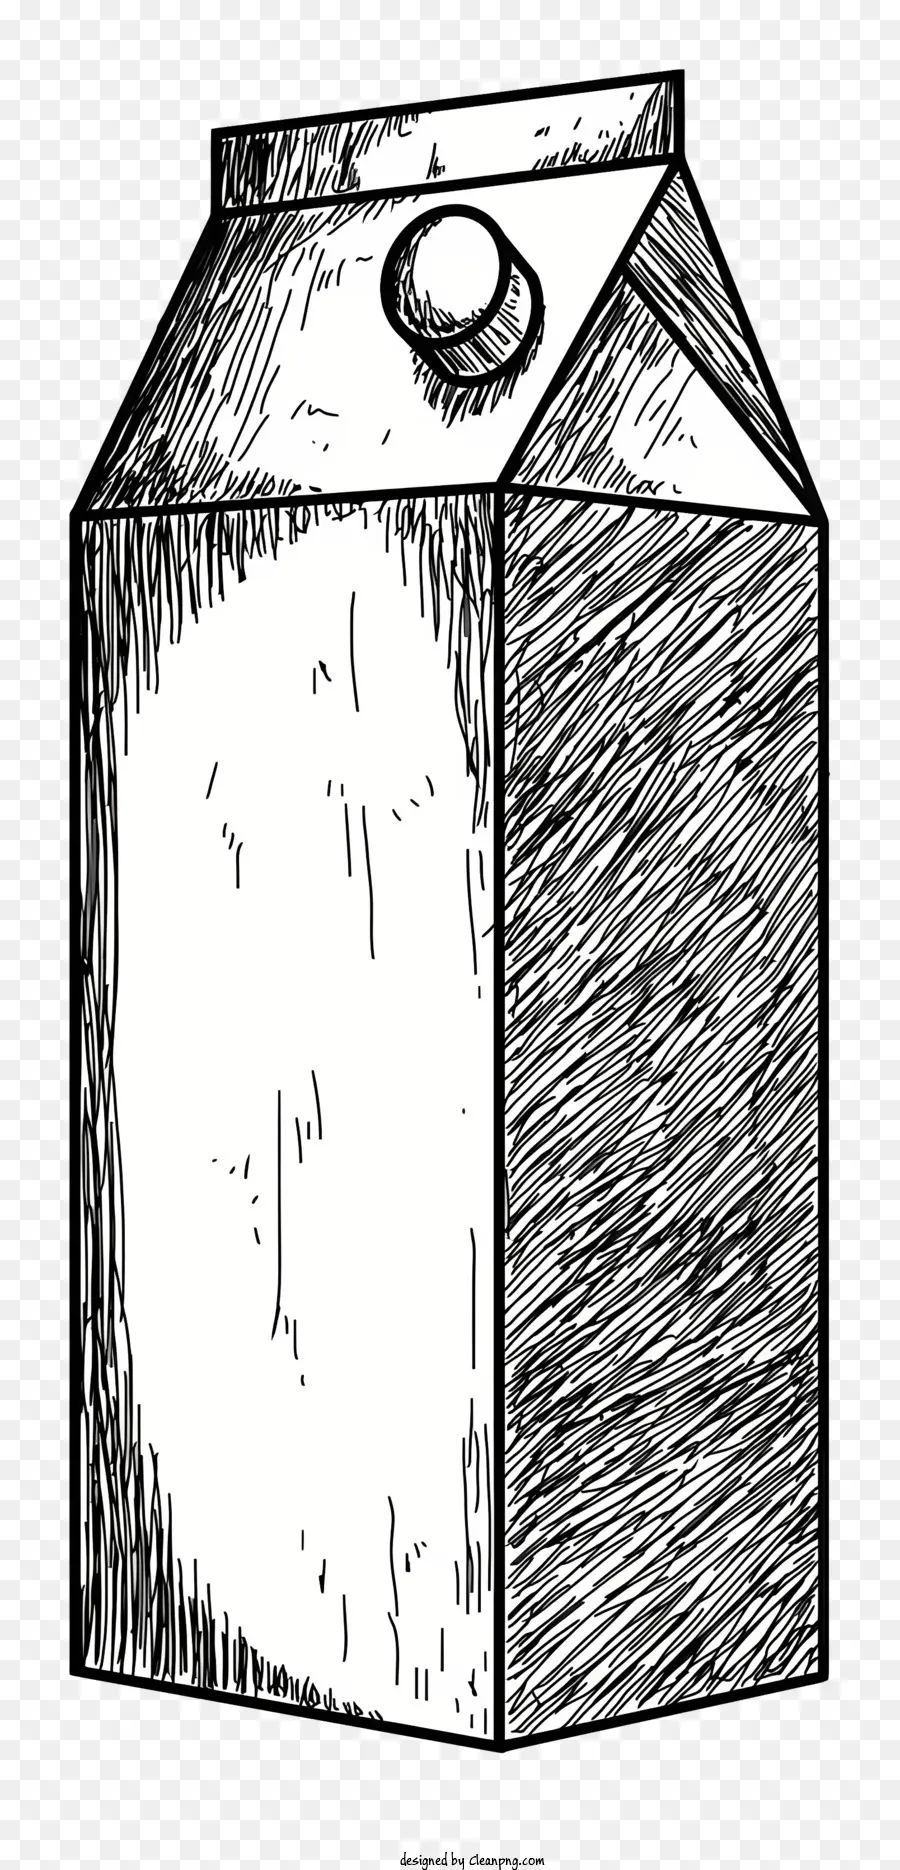 Milchkarton Schwarz -Weiß -Illustration klare plastische obere Rechteckform glatte Oberfläche - Monochromatischer Milchkarton mit klarem Plastikoberteil